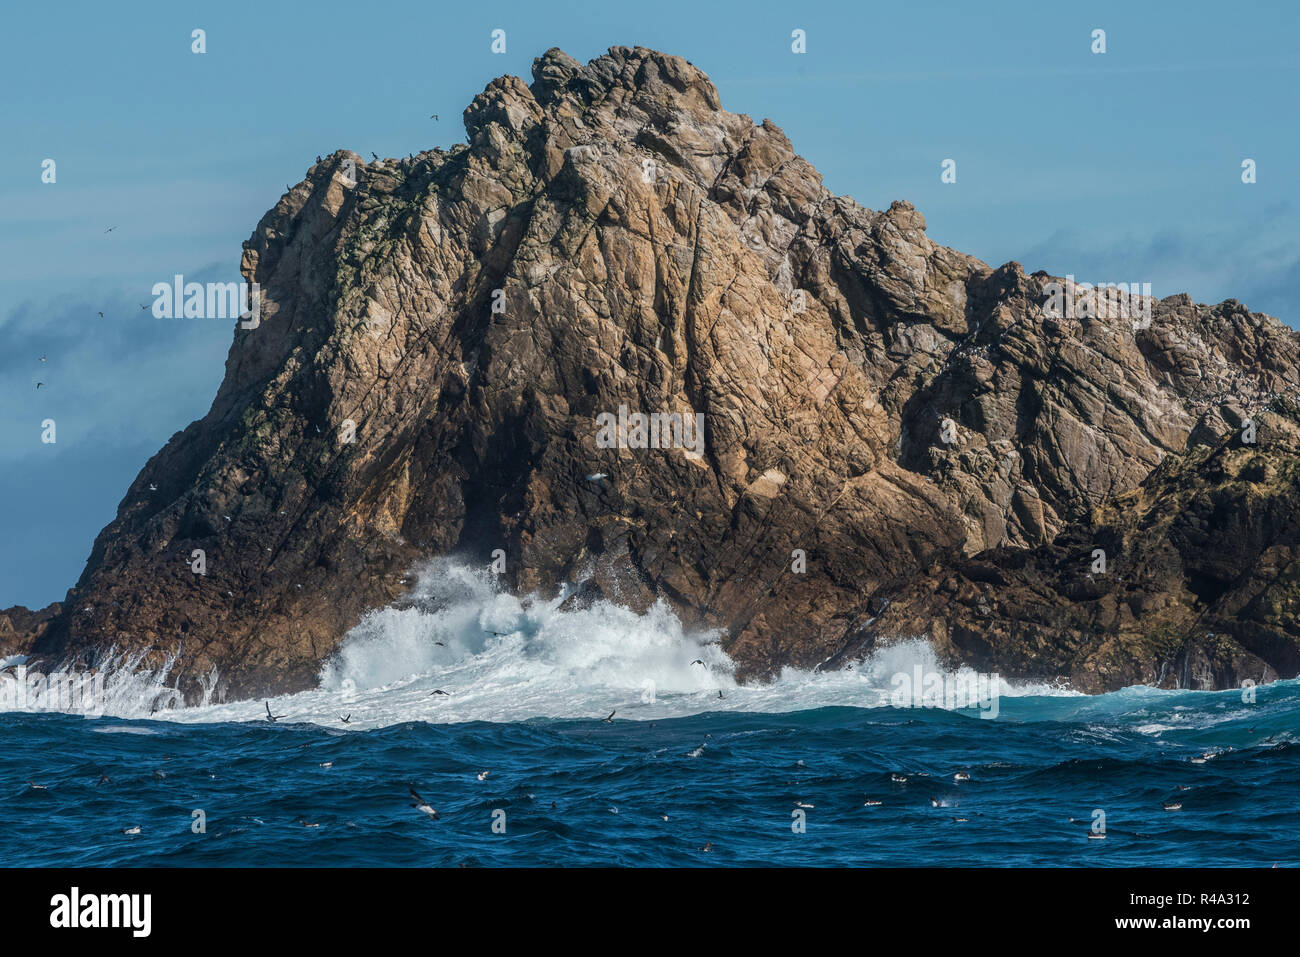 Una isla rocosa sobresale del océano Pacífico, esto es parte de las Islas Farallón, California. Foto de stock